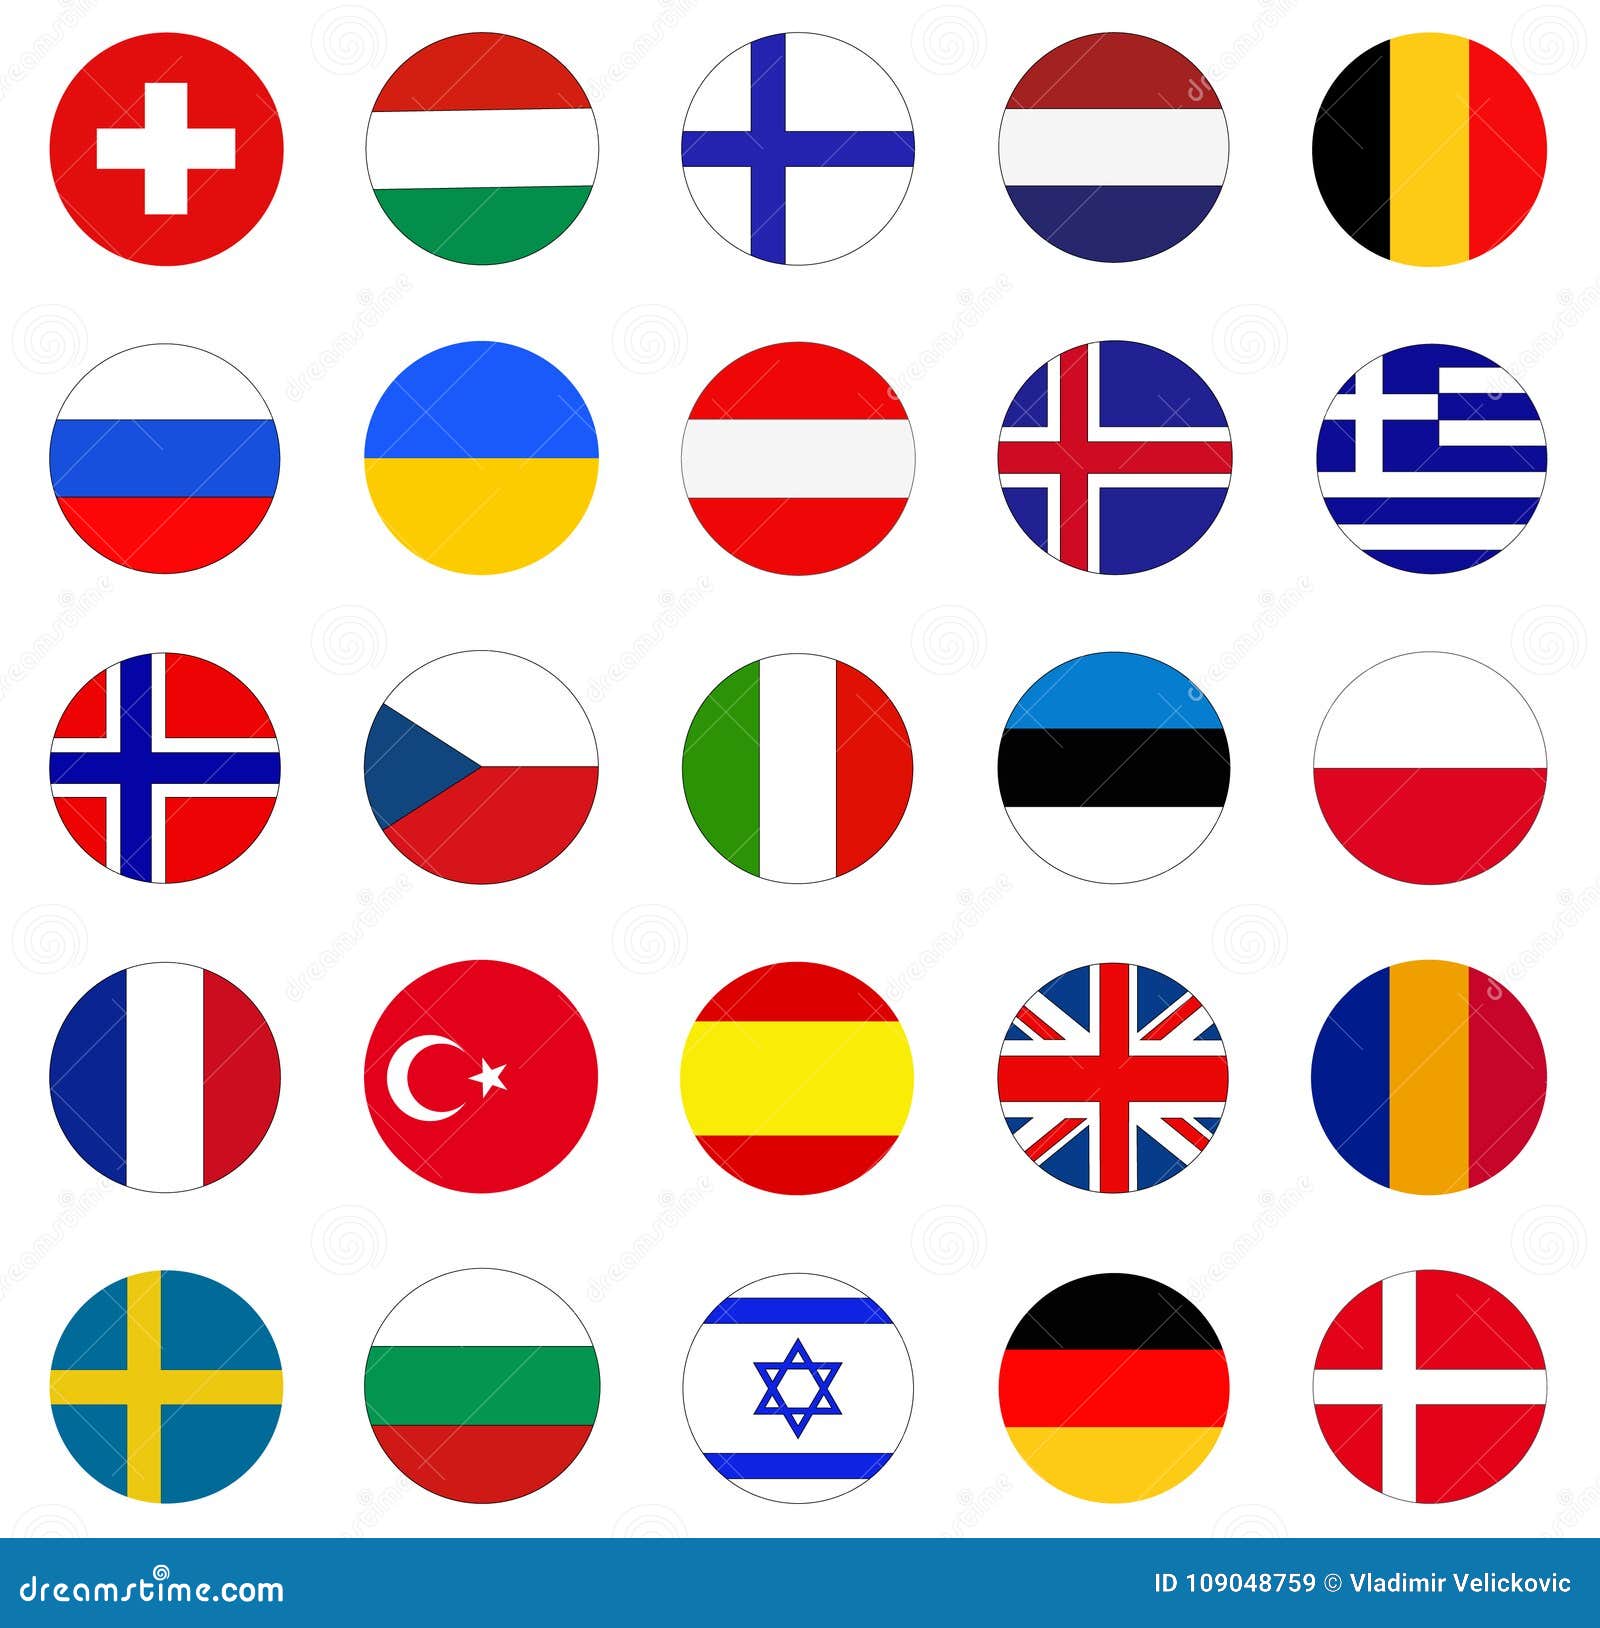 Europaische Flaggen Flaggen Von Landern In Europa Vektor Abbildung Illustration Von Europaische Flaggen